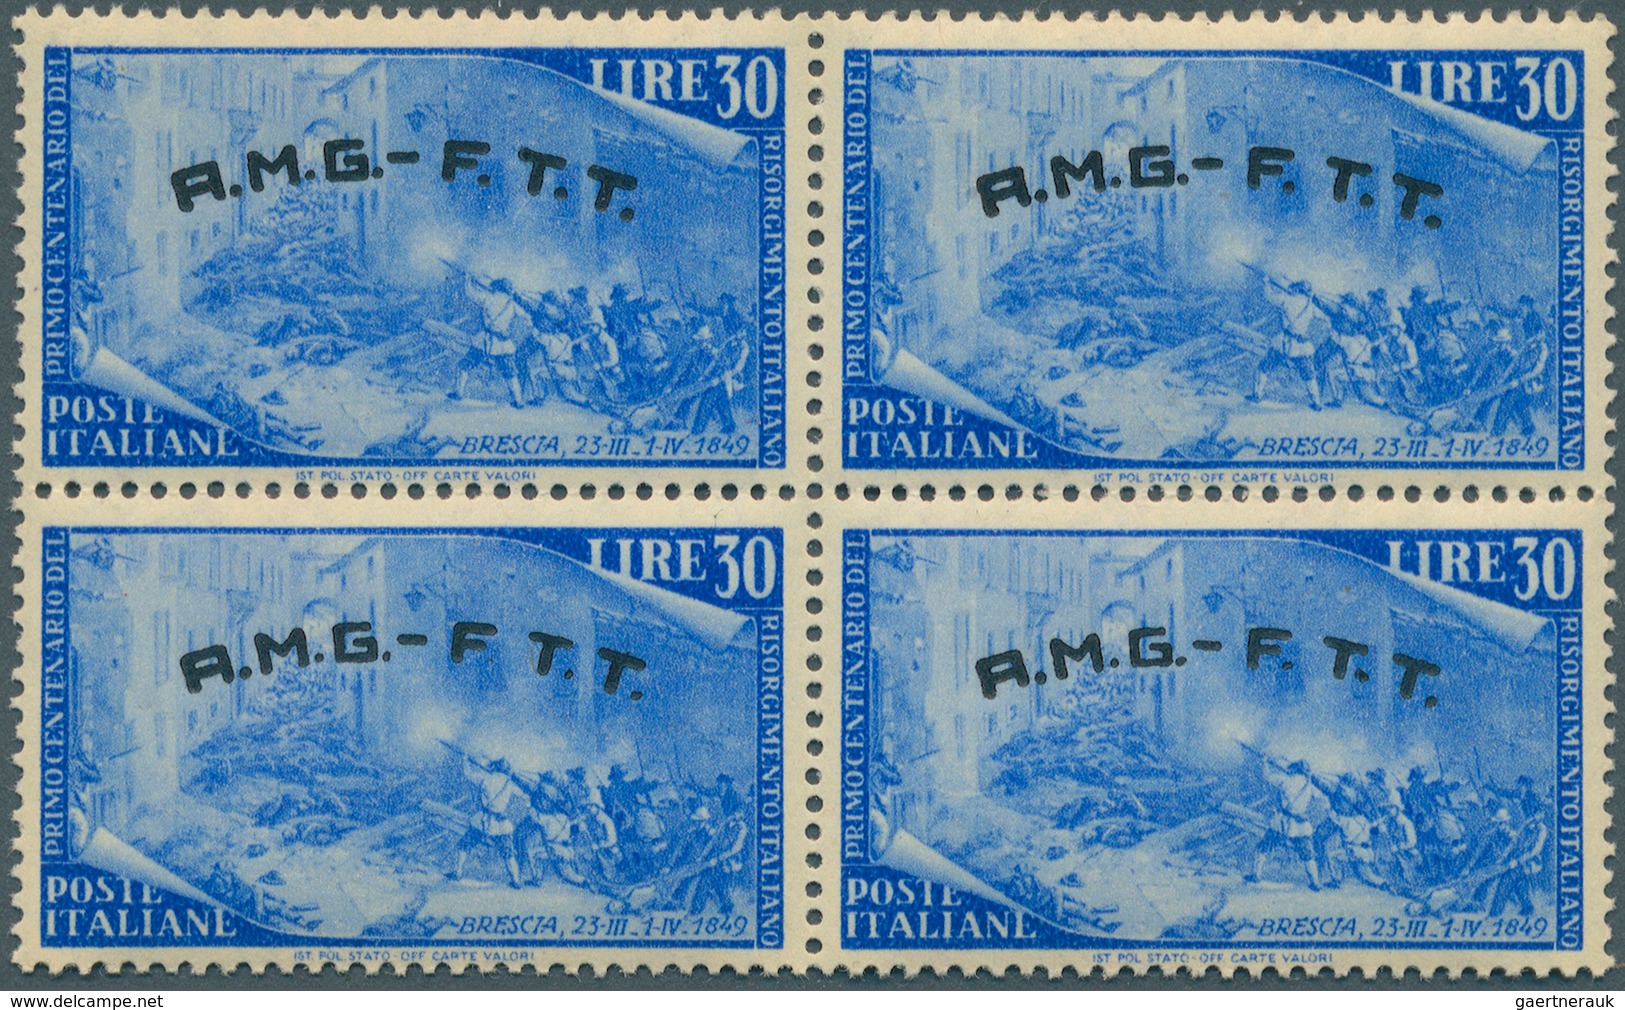 Triest - Zone A: 1948, 30 L. Freimarken 1948 Blau (Mi. Nr. 43), 400 Postfrische 4er-Blocks, Linke Un - Used